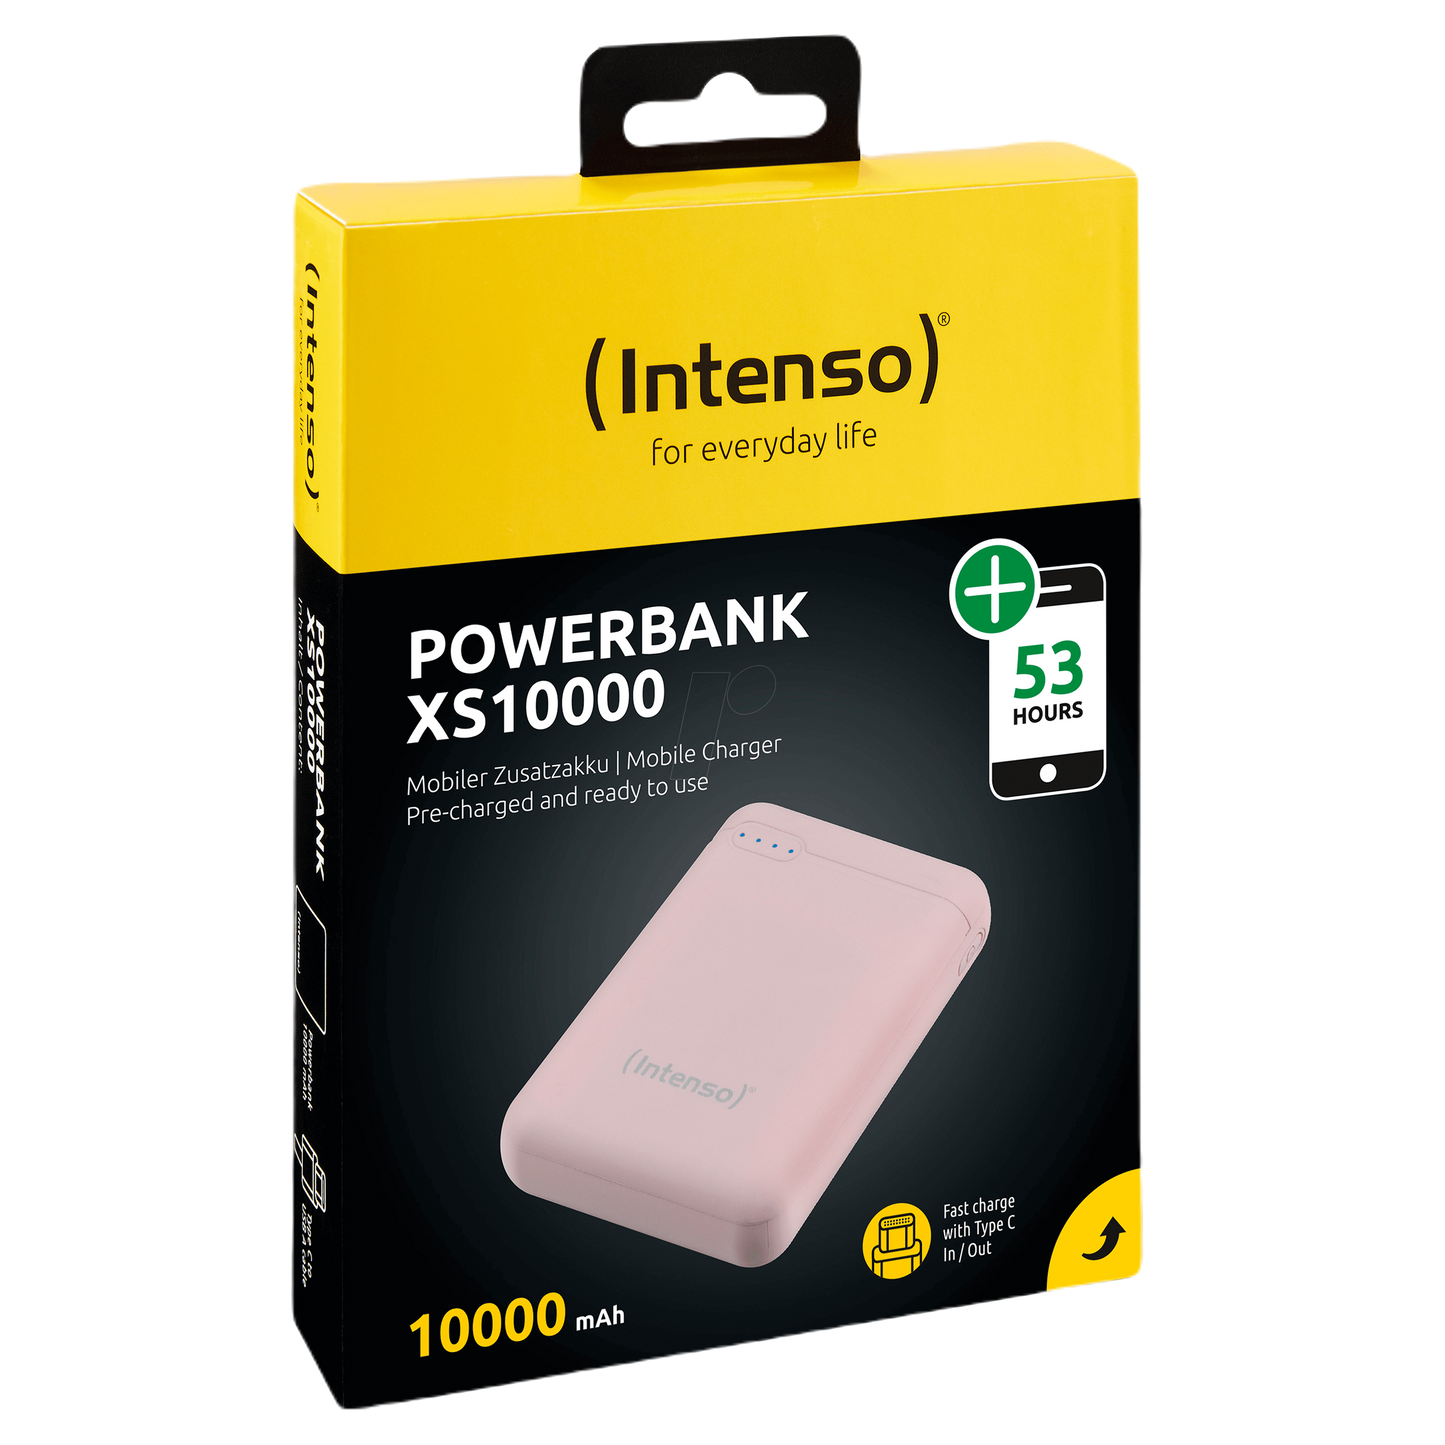 Power Bank XS 10 000 INTENSO